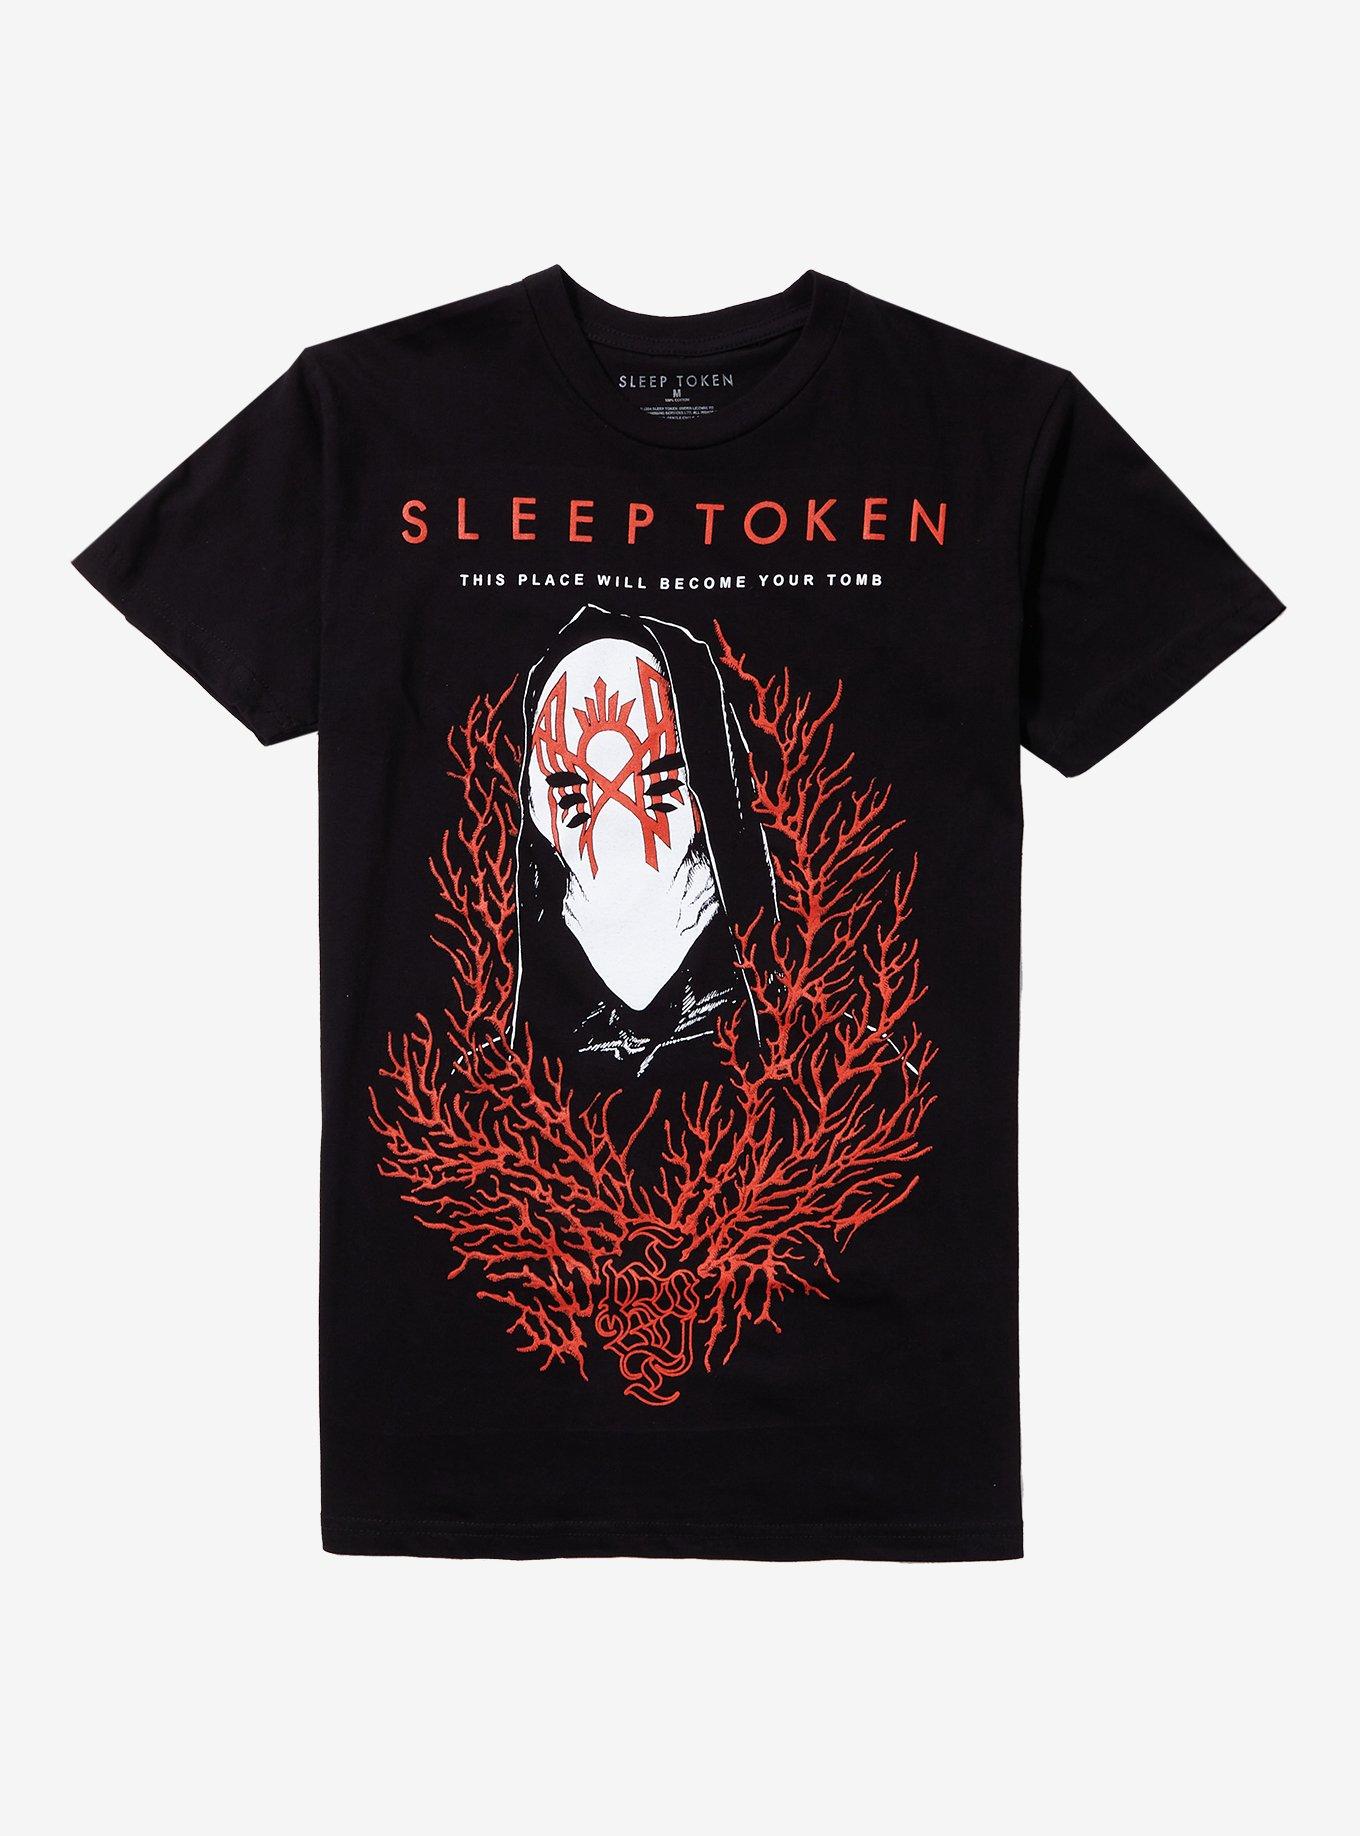 Sleep Token Vessel Album Title Boyfriend Fit Girls T-Shirt, , hi-res